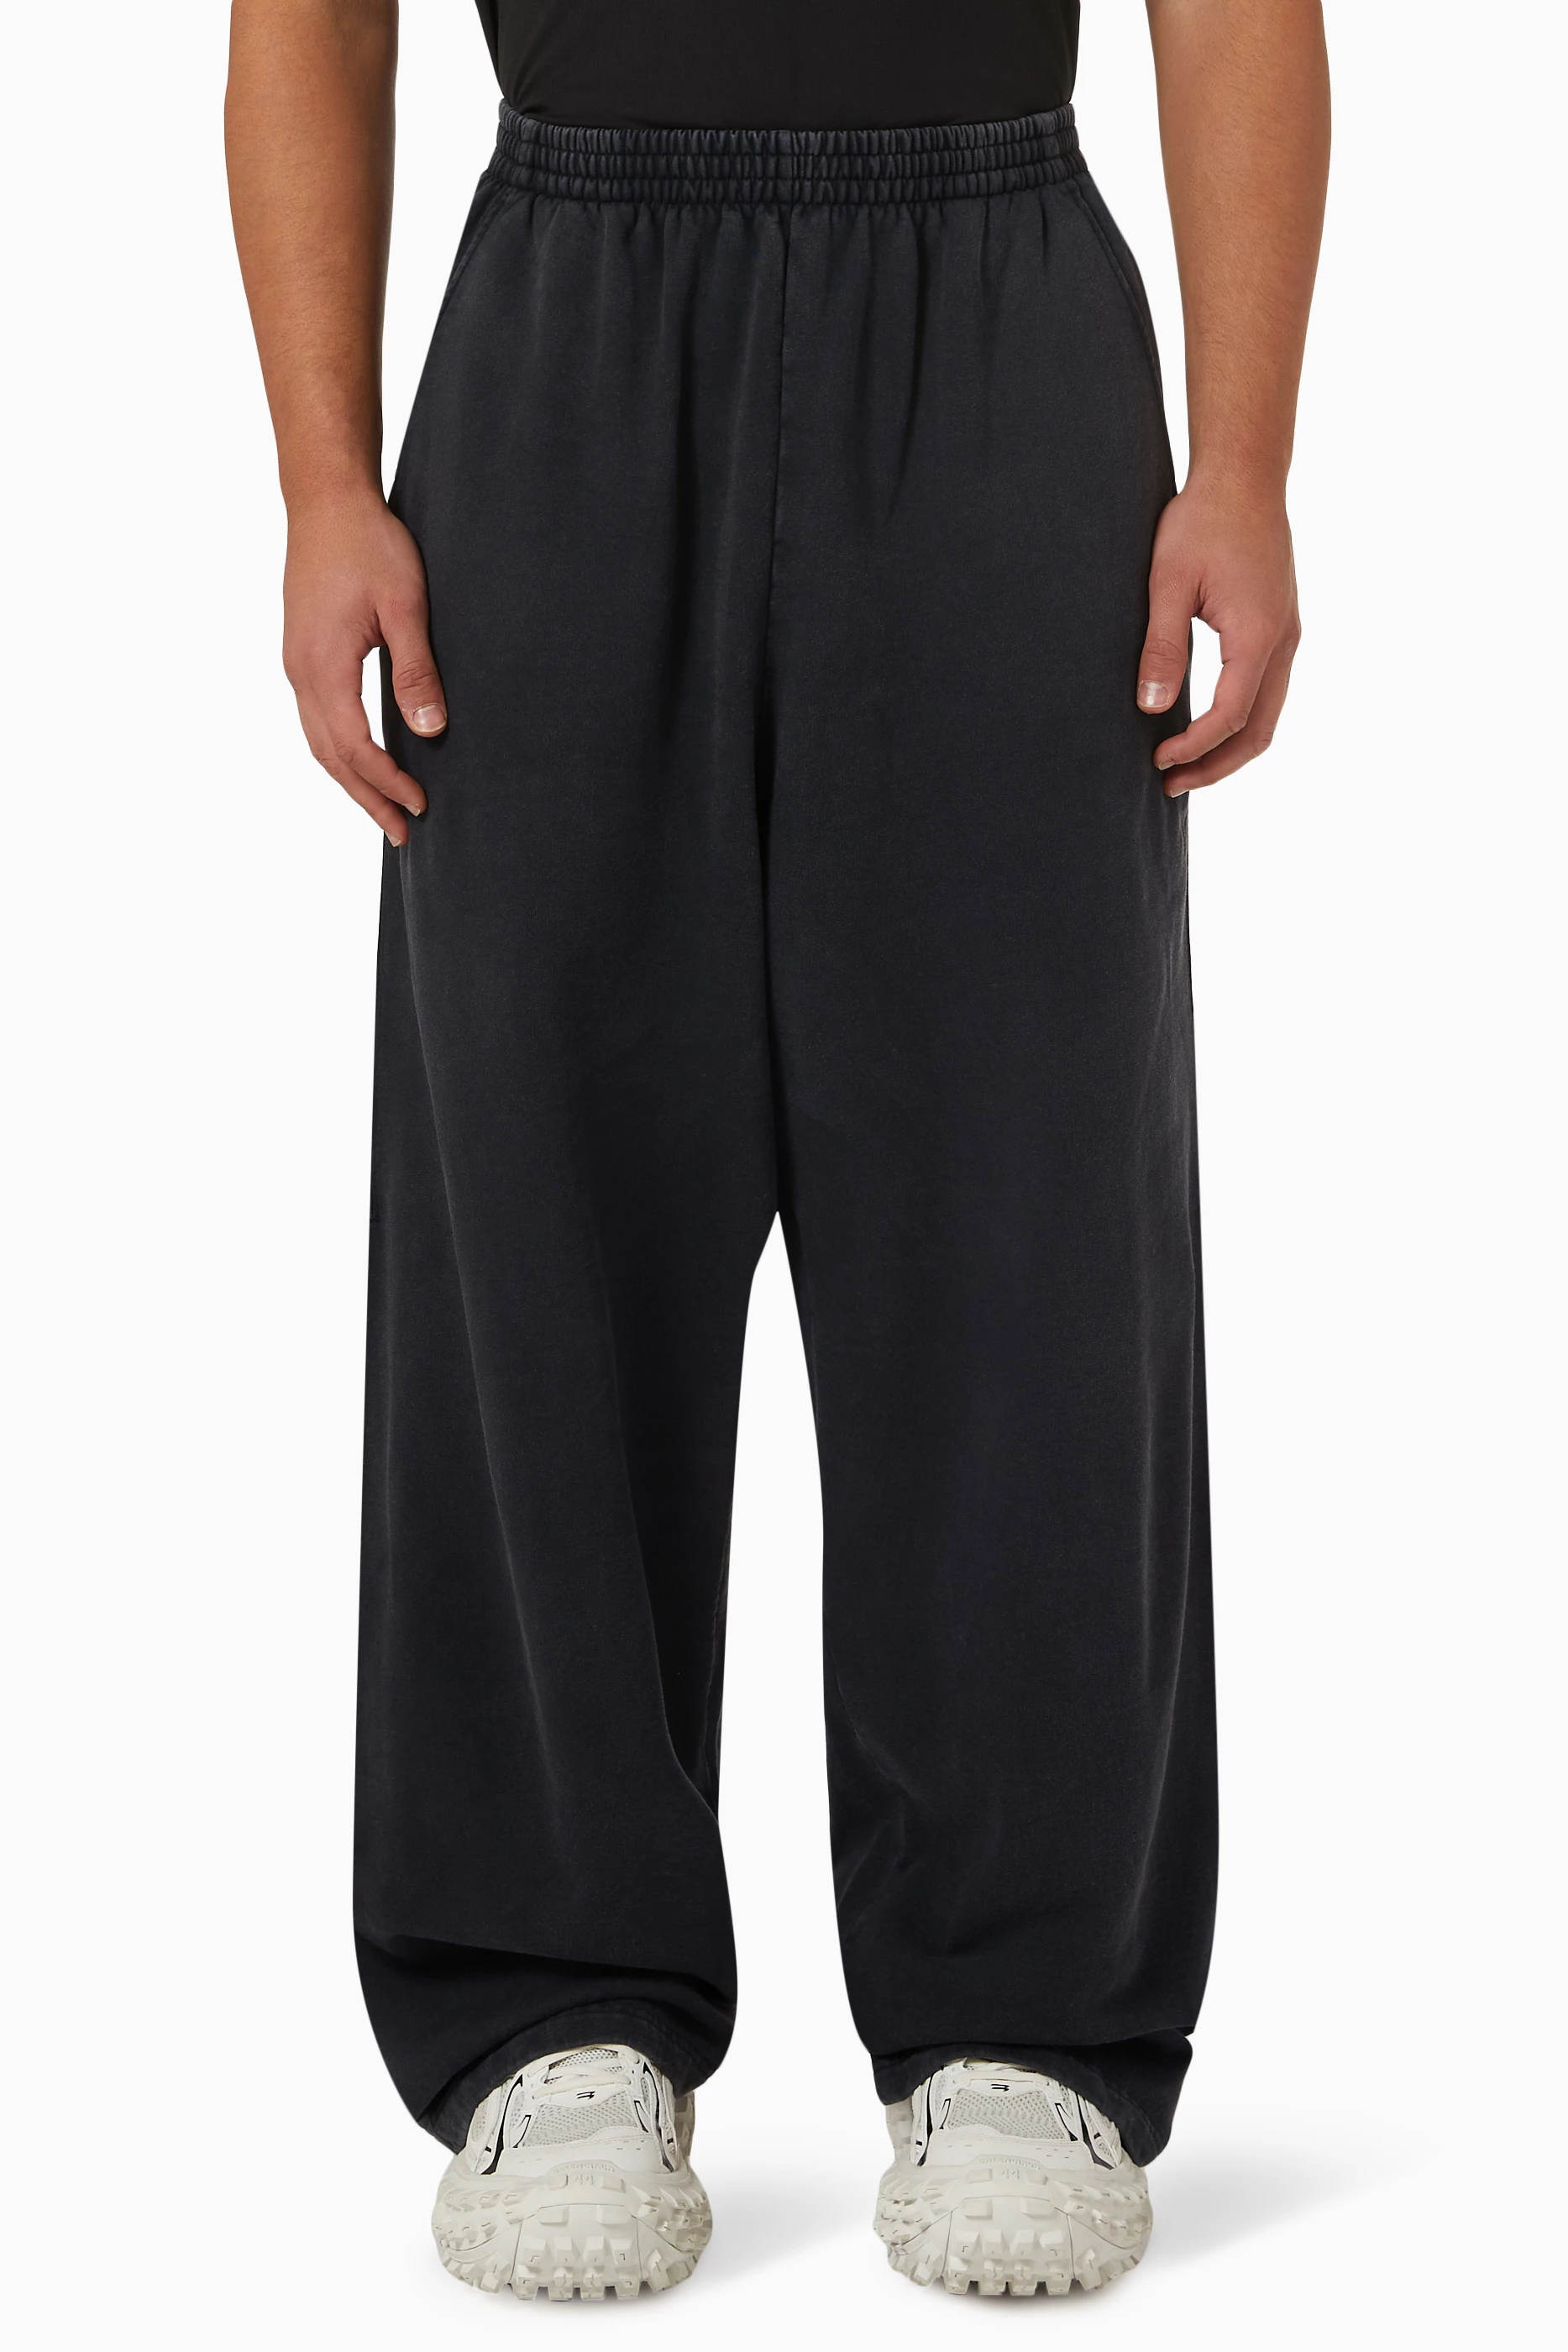 Buy Balenciaga Black Baggy Sweatpants in Heavy Fleece for Men in Kuwait